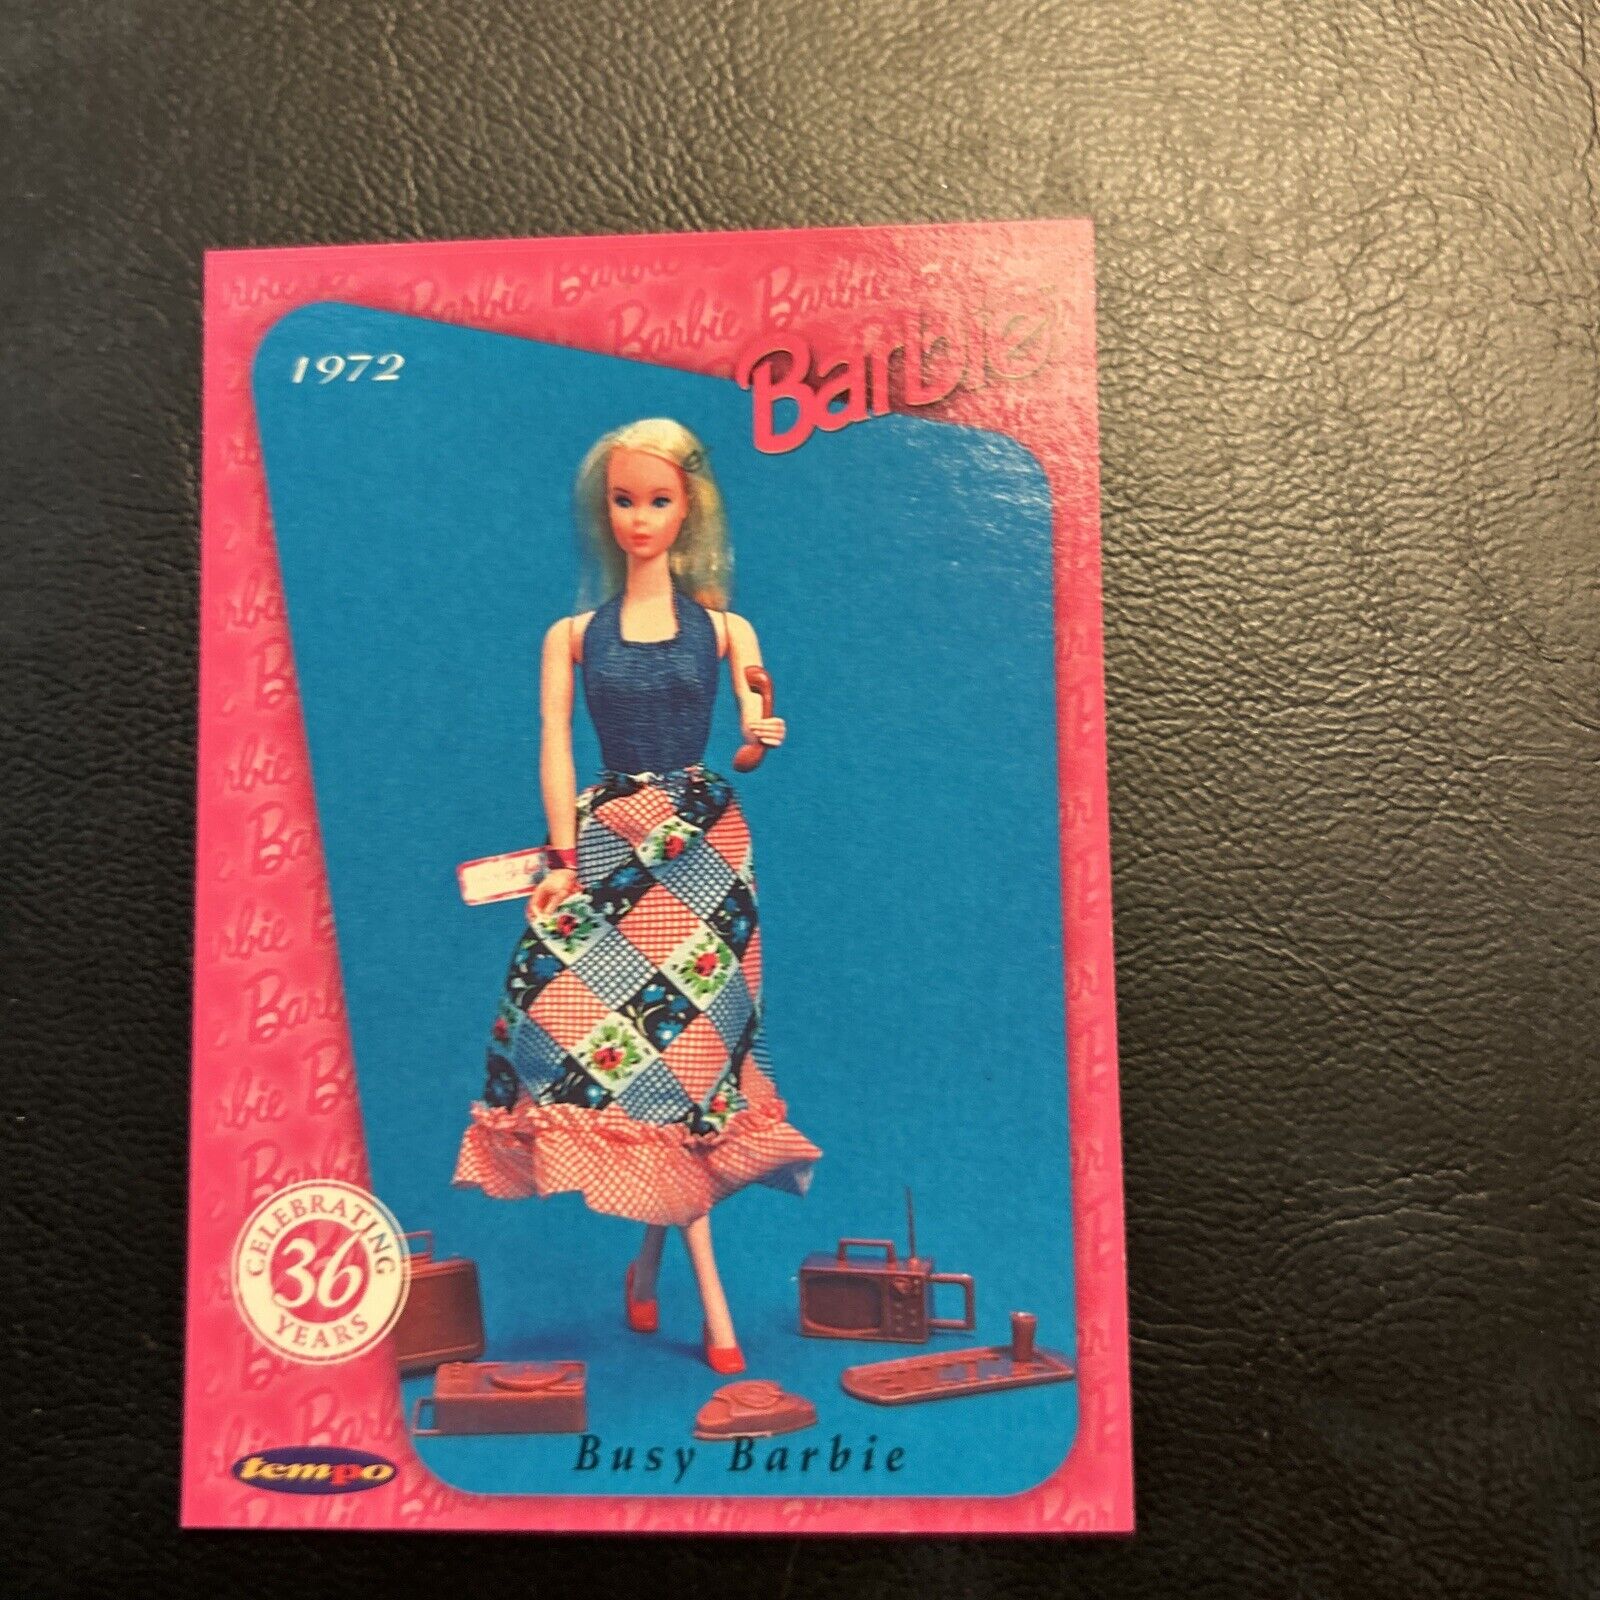 Jb9c Barbie Doll Celebrating 36 Years #28 Busy Barbie, 1972